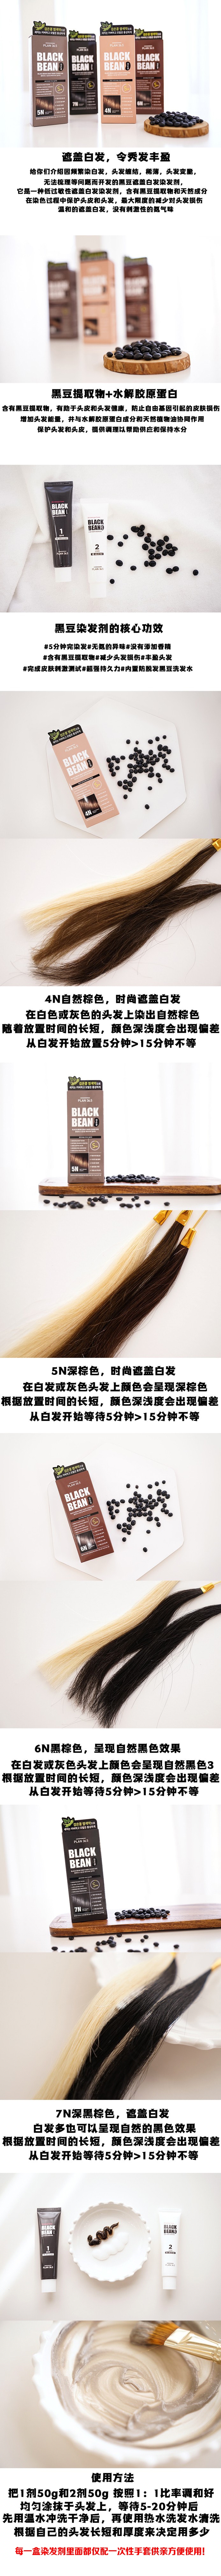 韓國 【黑豆染髮】 Plan 36.5 黑豆 防脫髮滋潤染髮劑 可染白髮 #7N 柔黑色